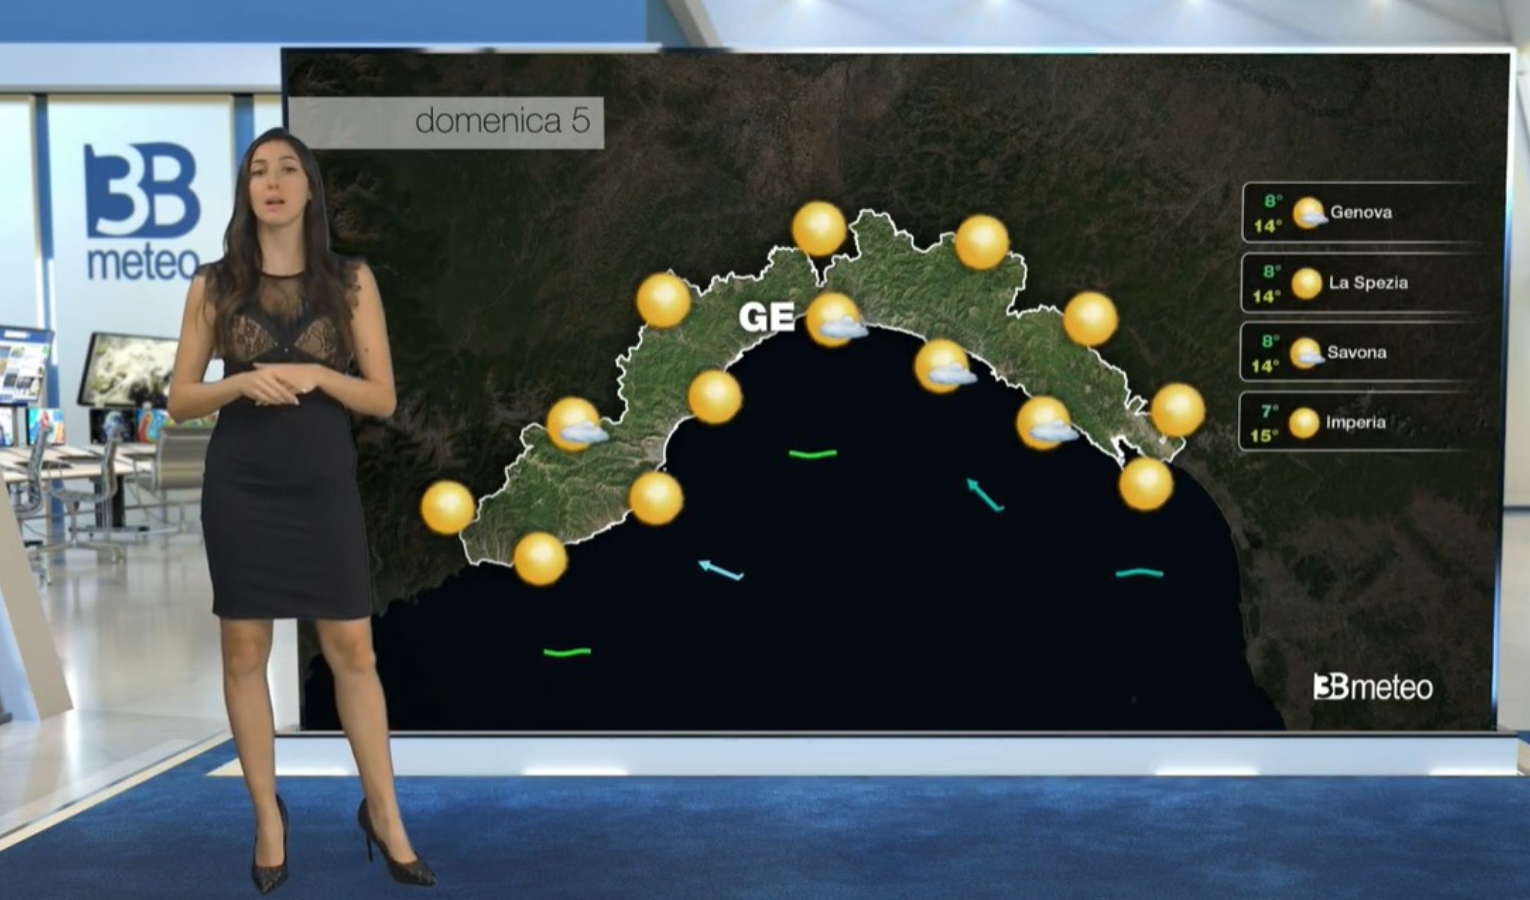 Le previsioni del tempo in Liguria, sole e temperature miti